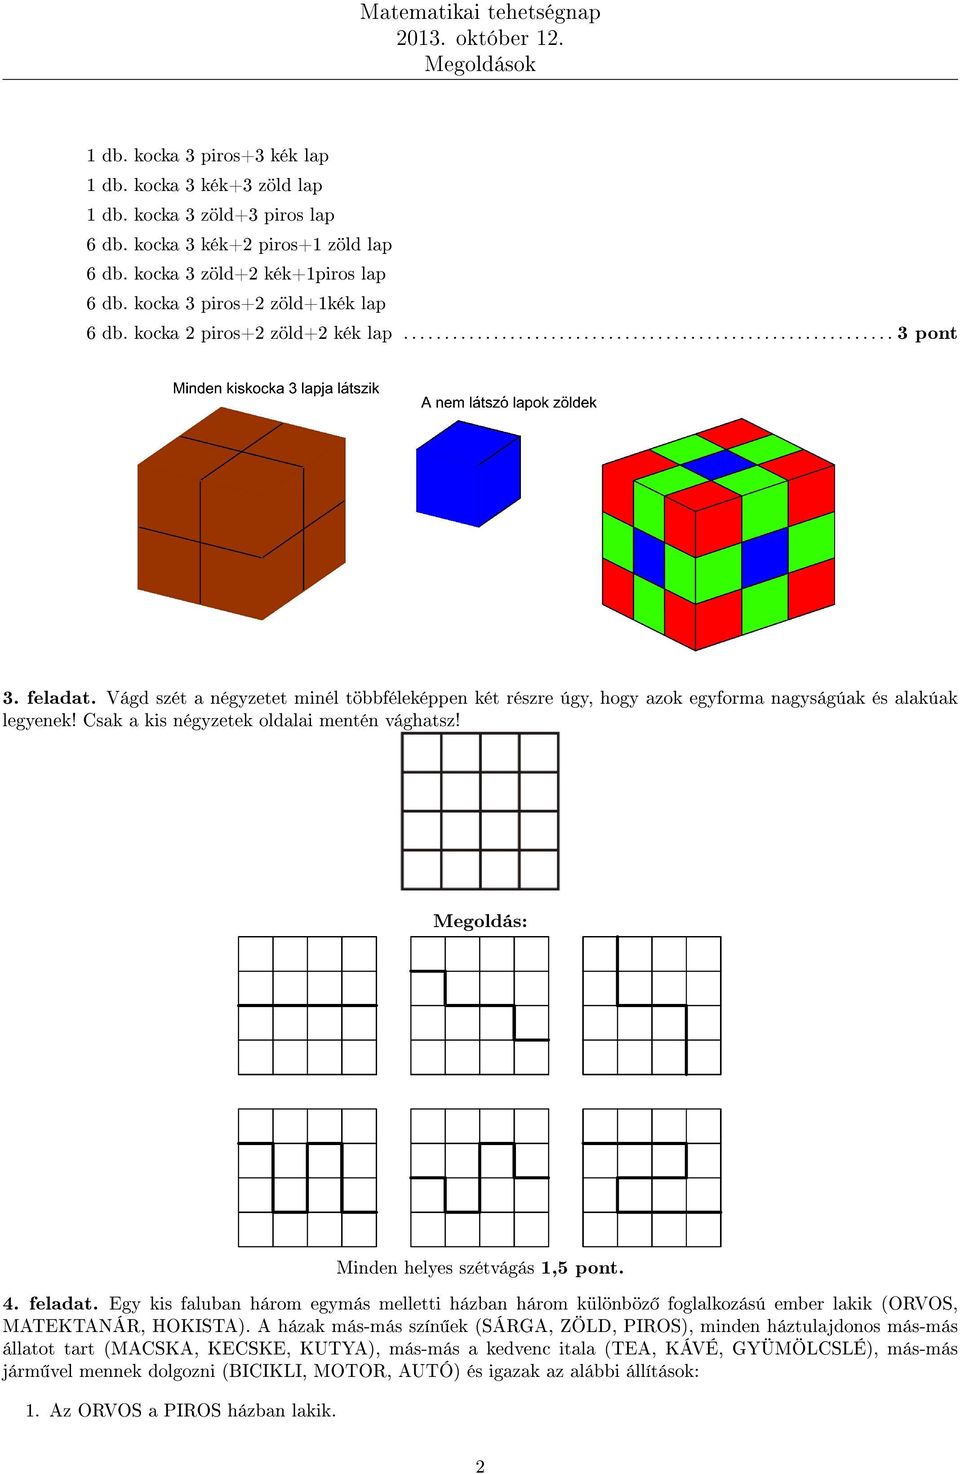 Vágd szét a négyzetet minél többféleképpen két részre úgy, hogy azok egyforma nagyságúak és alakúak legyenek! Csak a kis négyzetek oldalai mentén vághatsz! Megoldás: Minden helyes szétvágás 1,5 pont.